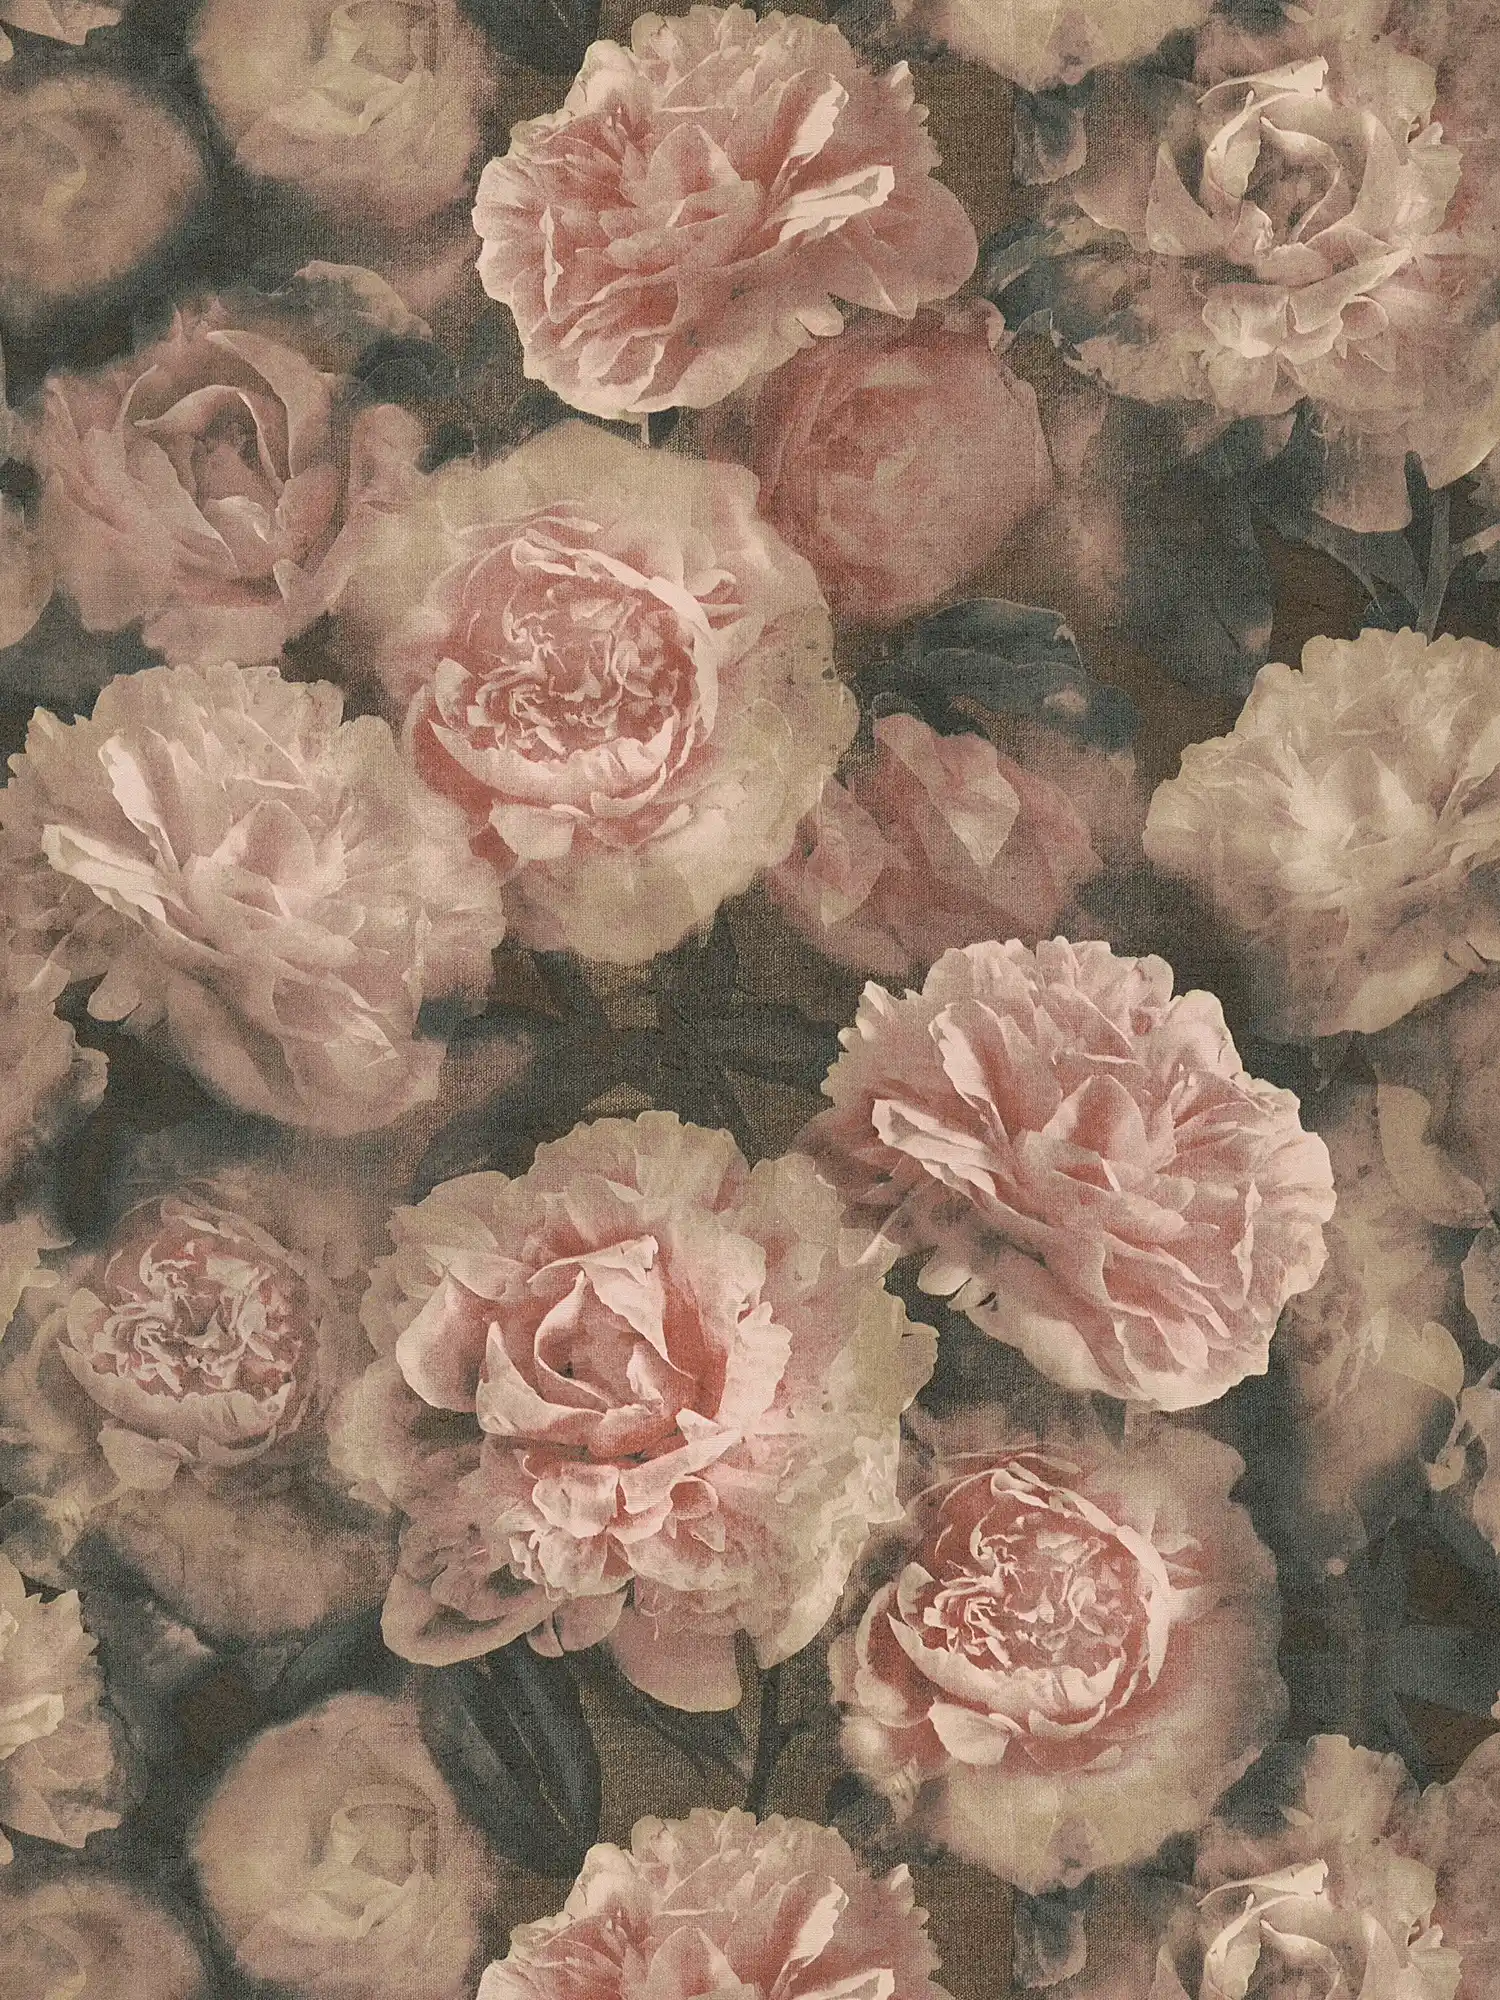         Blumentapete Rosen im Vintage Look – Rosa, Rot, Schwarz
    